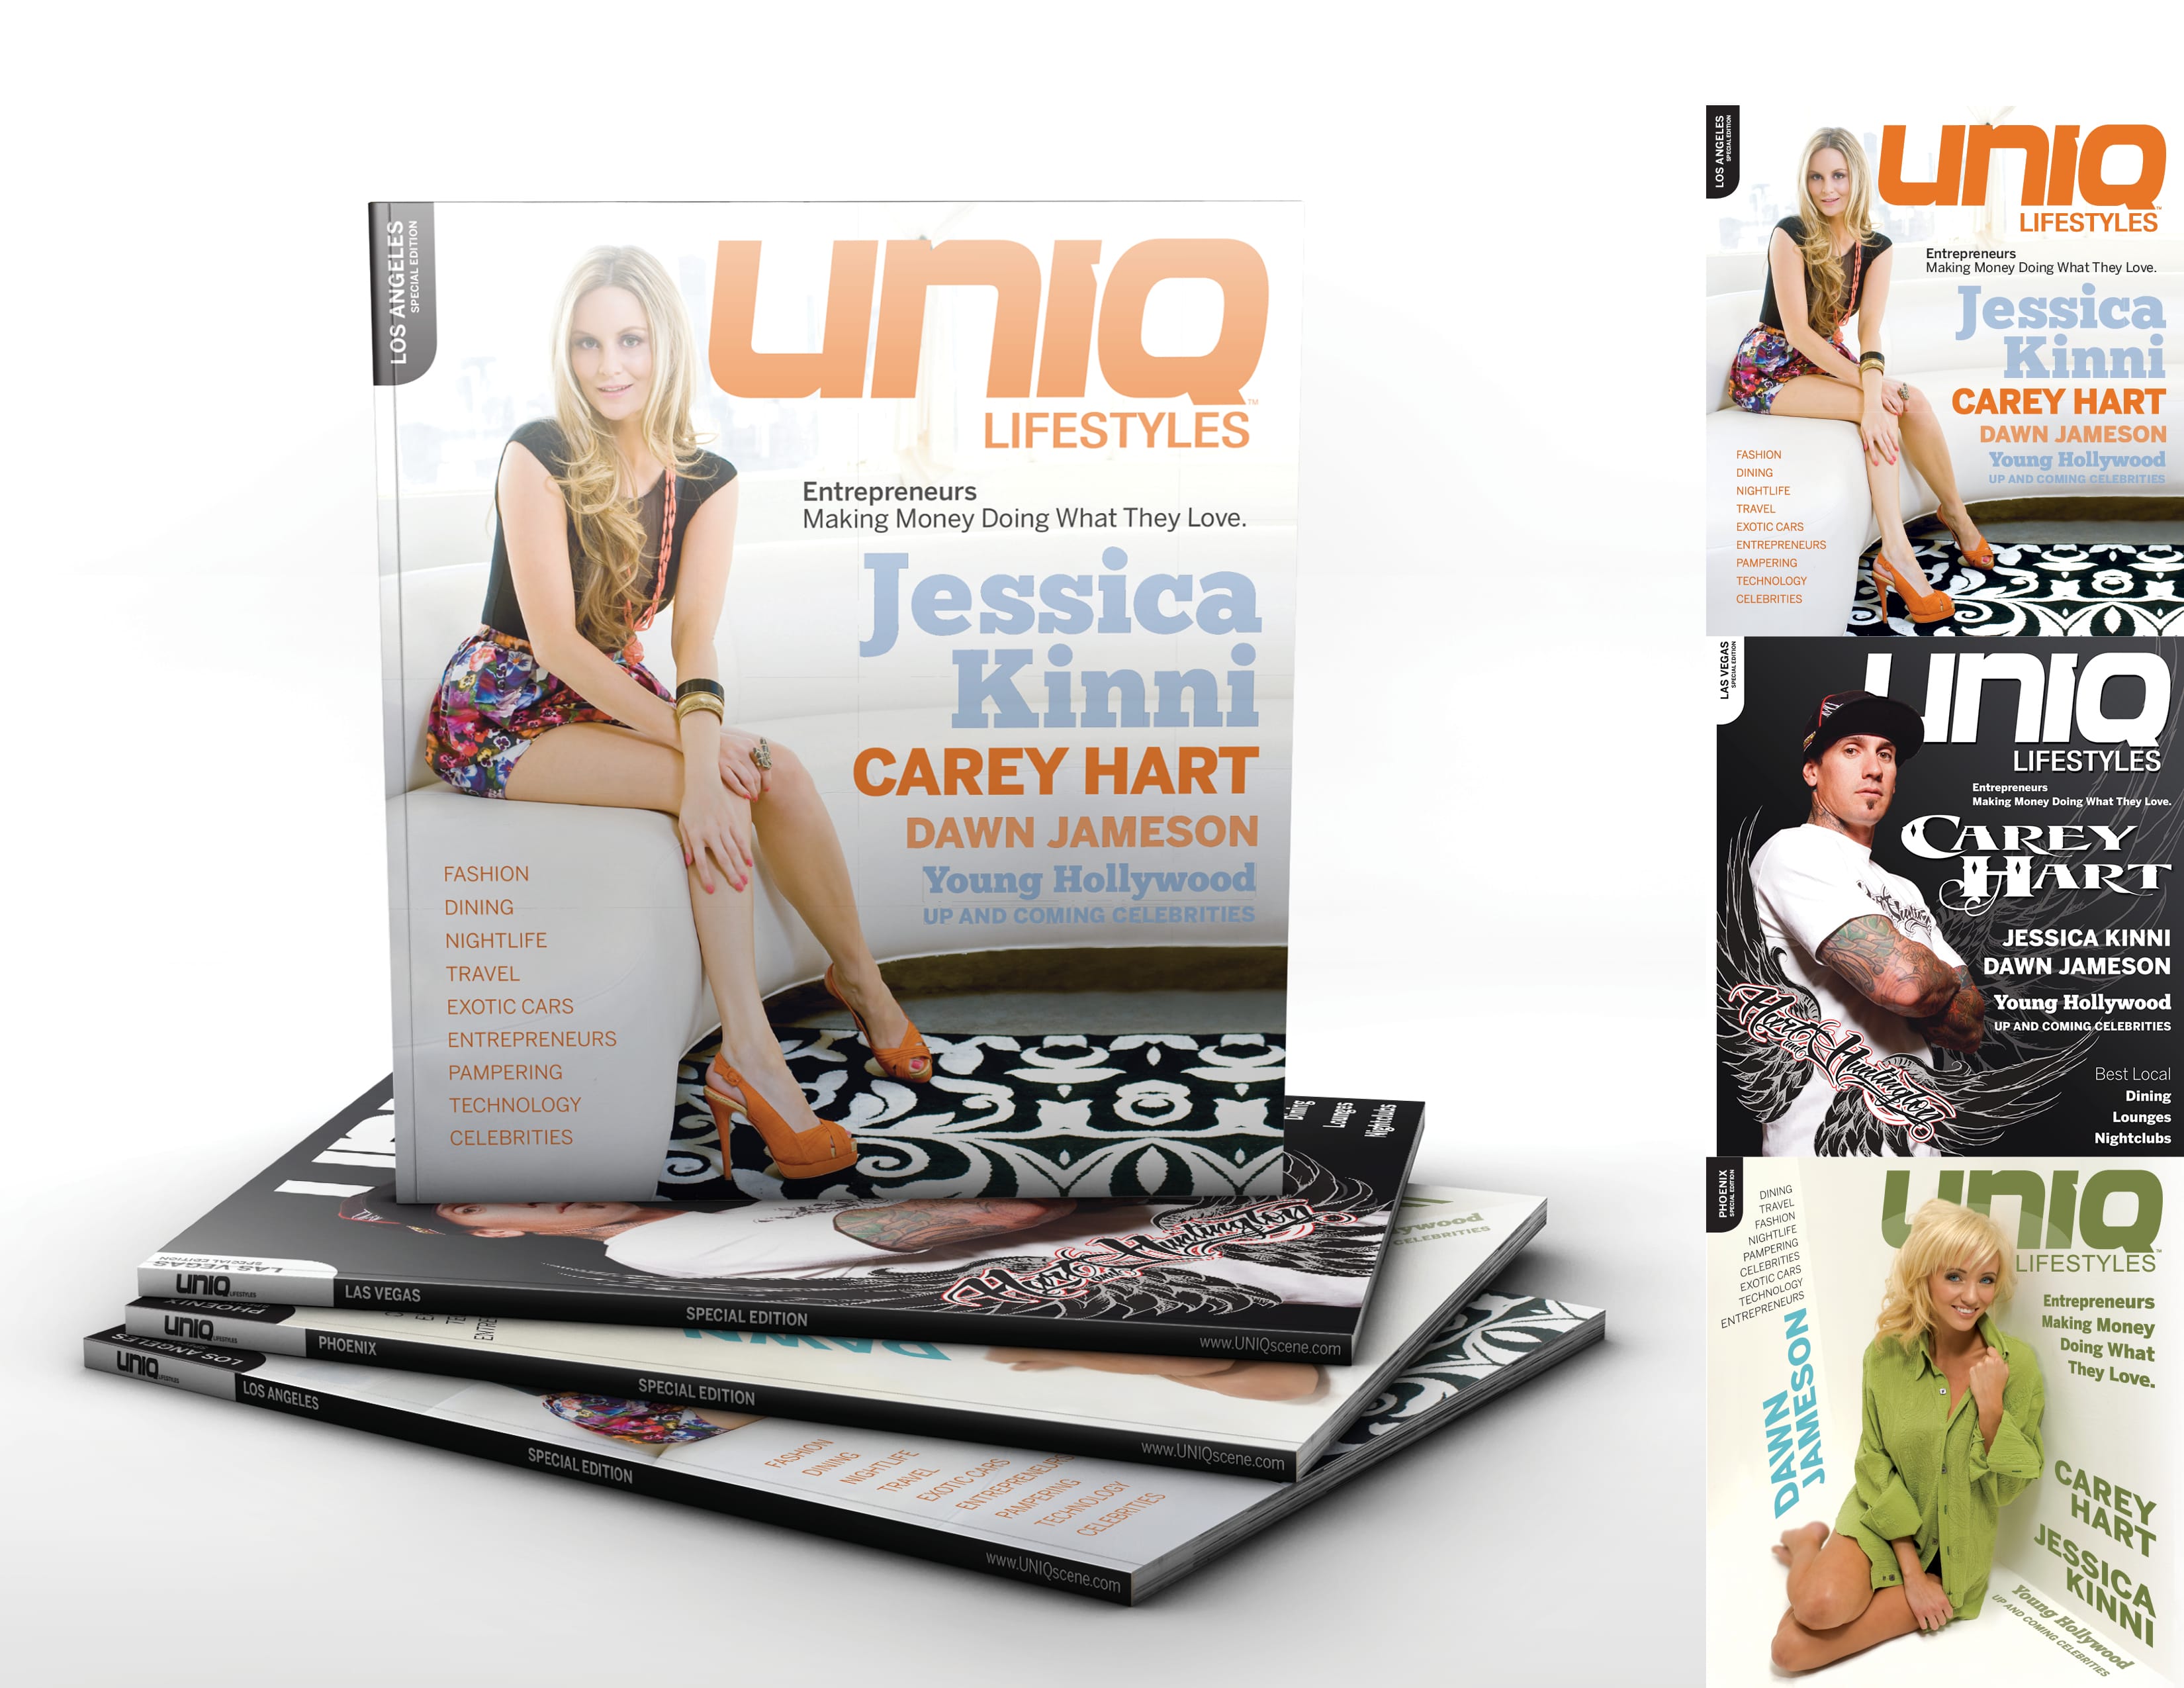 UNIQ Lifestyles Magazine Covers